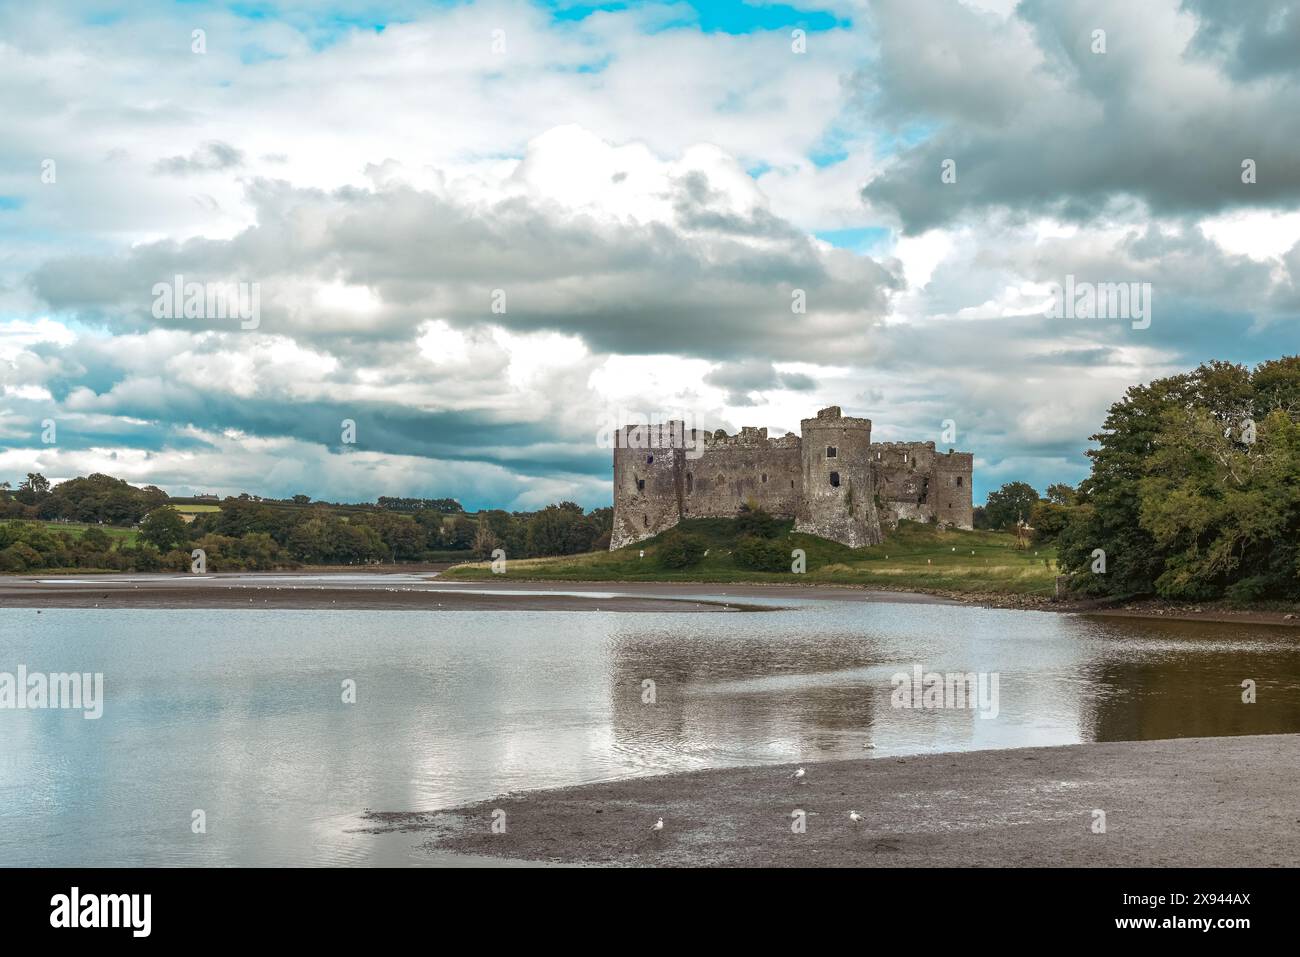 Il castello di Carew, in Galles, offre una vista esterna sul vicino fiume ed è un punto di interesse storico da visitare per i turisti Foto Stock